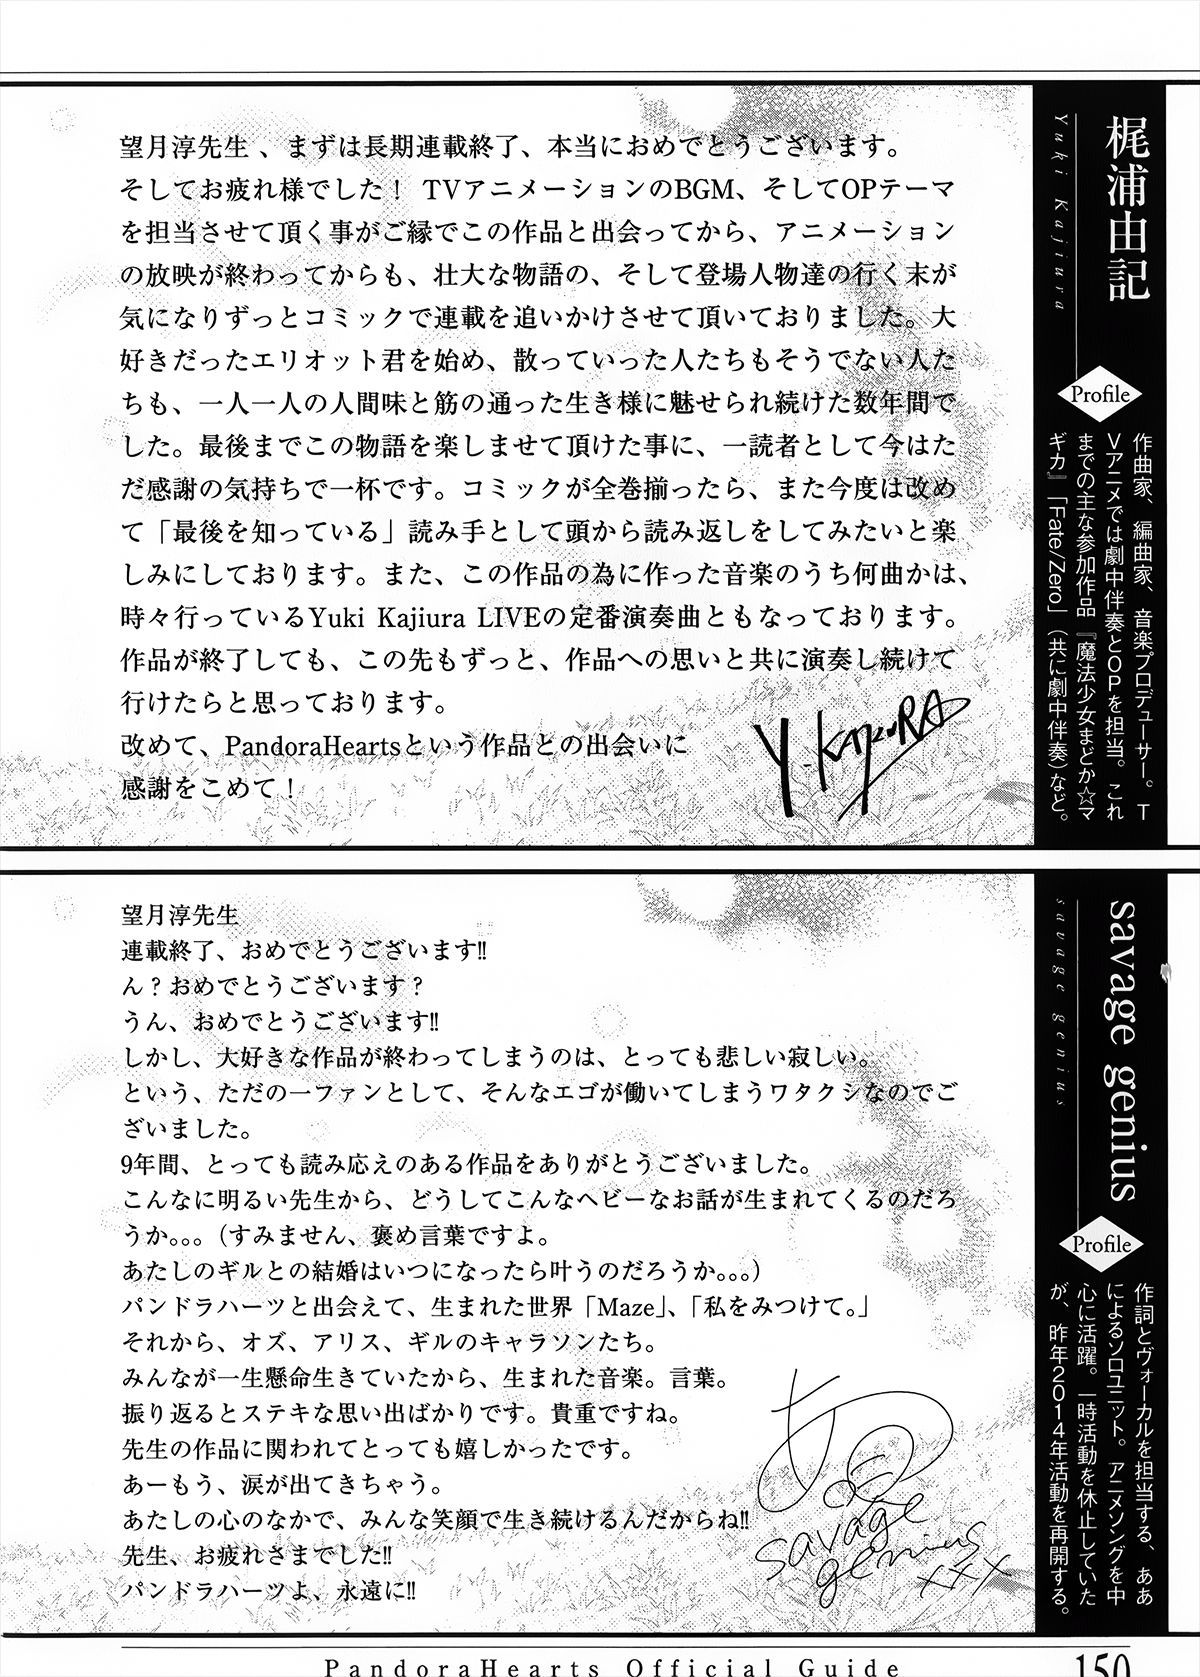 Pandora Hearts Guidebook 24+1: Last Dance パンドラハーツ オフィシャルガイド 24 + 1 ~Last Dance! 154